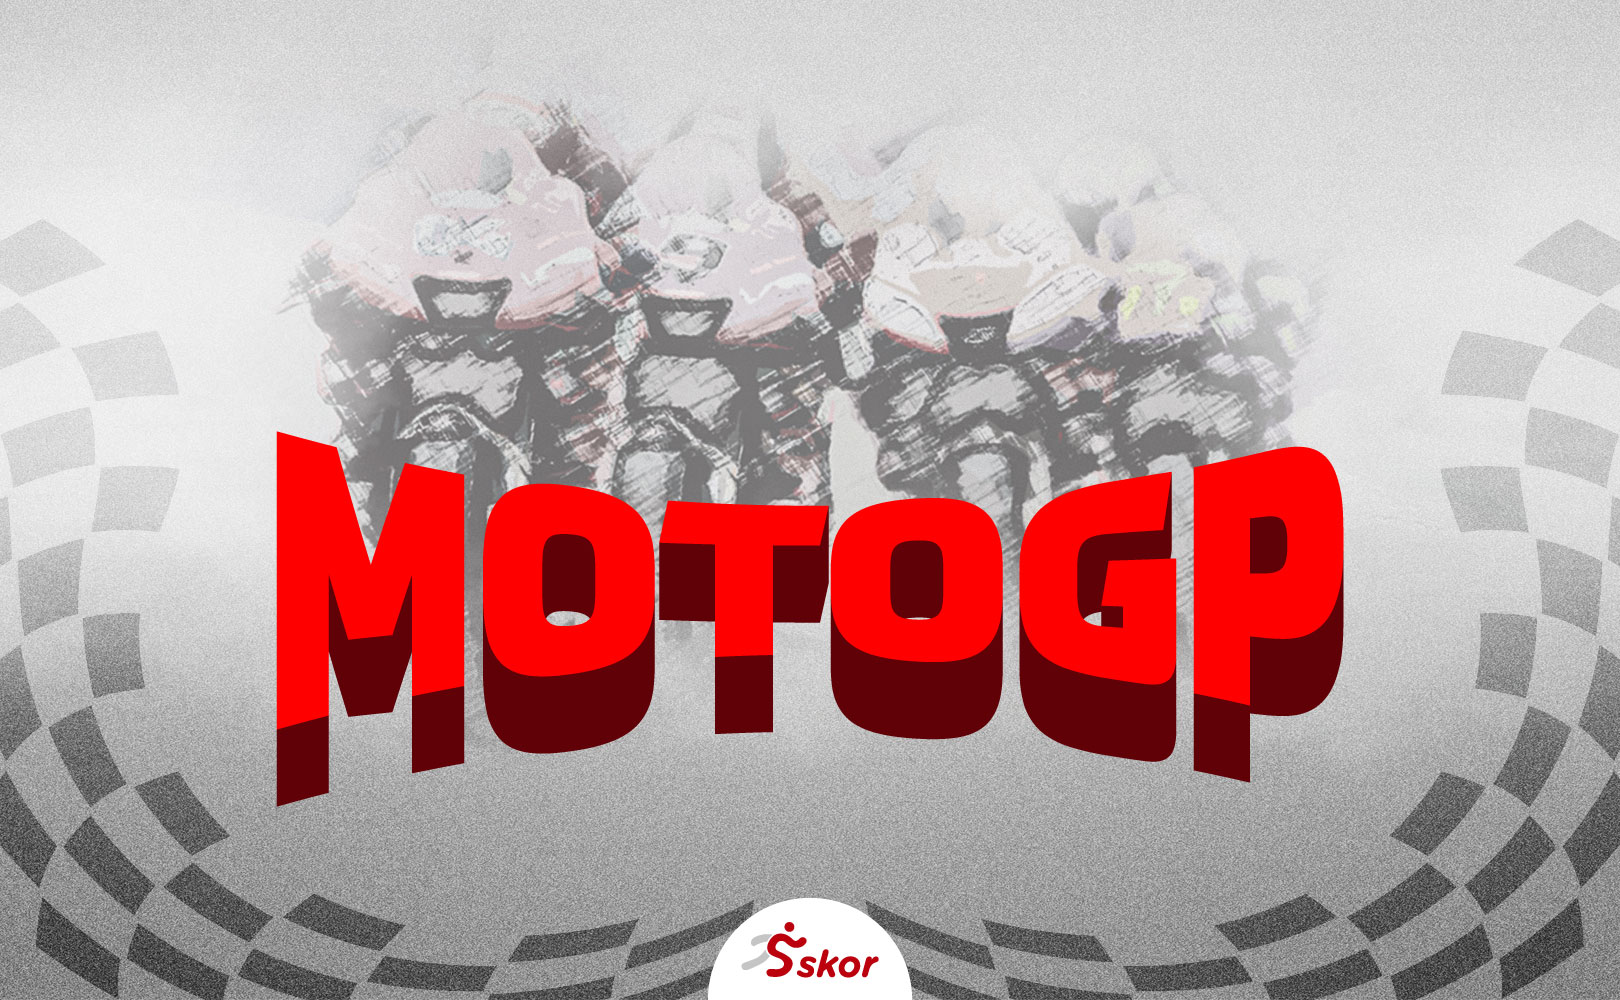 GP Jerman Minta Ditunda, Jadwal MotoGP 2020 Kembali Molor